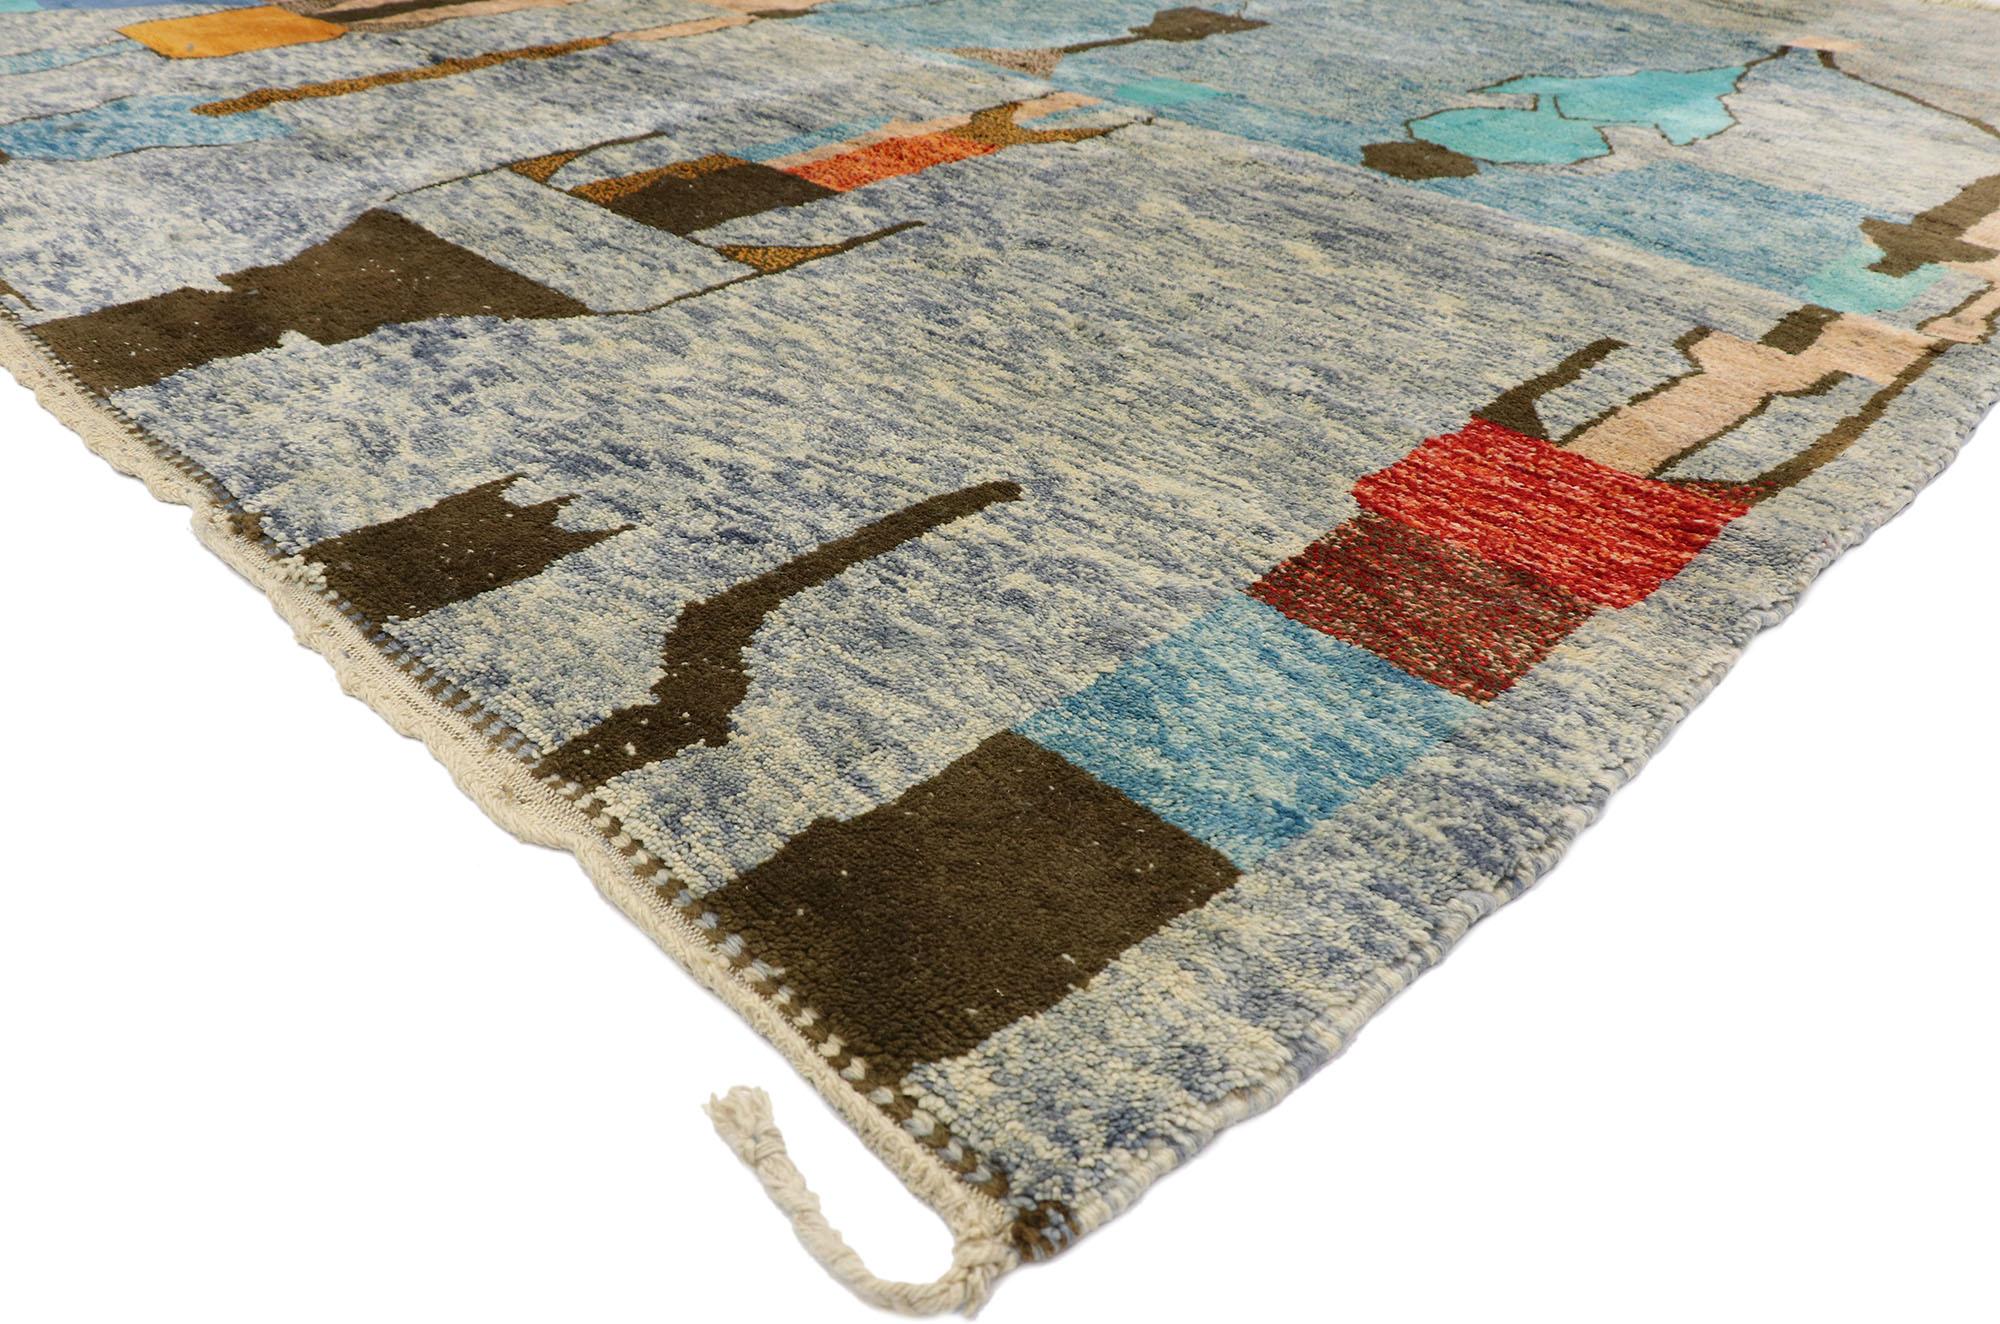 21176 Moderner Beni Mrirt Marokkanischer Teppich, 10'04 x 12'09. Beni Mrirt Teppiche symbolisieren eine verehrte marokkanische Webtradition, die für ihre üppige Textur, geometrischen Motive und beruhigenden Erdtöne bekannt ist. Diese von geschickten